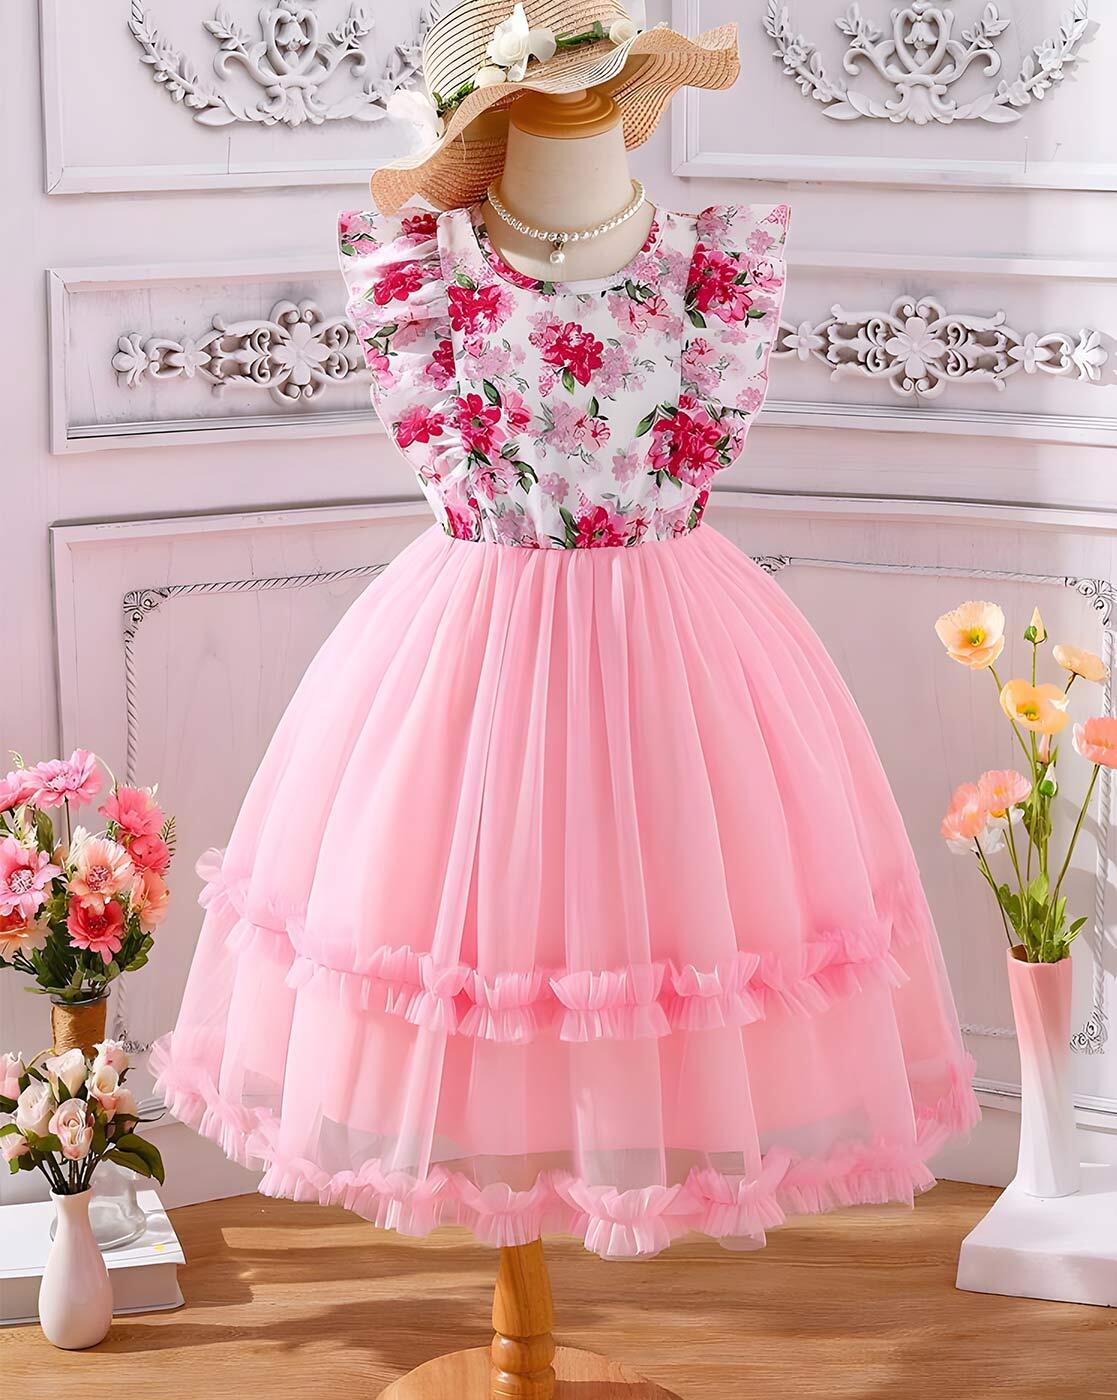 Flower Girl Dresses: 30 Looks For Little Girls + FAQs